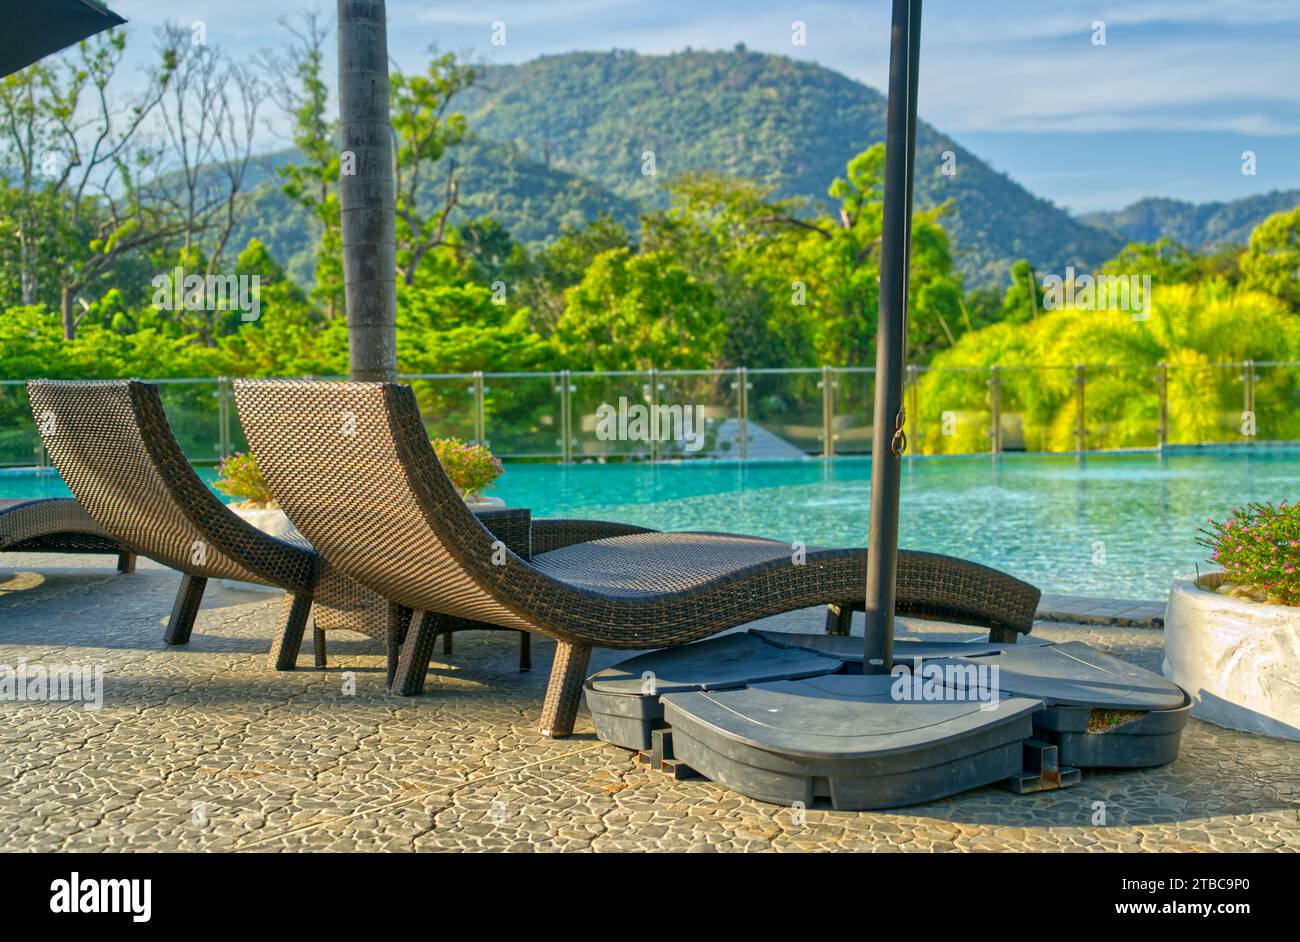 Leere zwei Korbliege neben einem Swimmingpool eines Resorts, Morgenlicht, Hintergrund von Bäumen, Berg und Himmel. Stockfoto